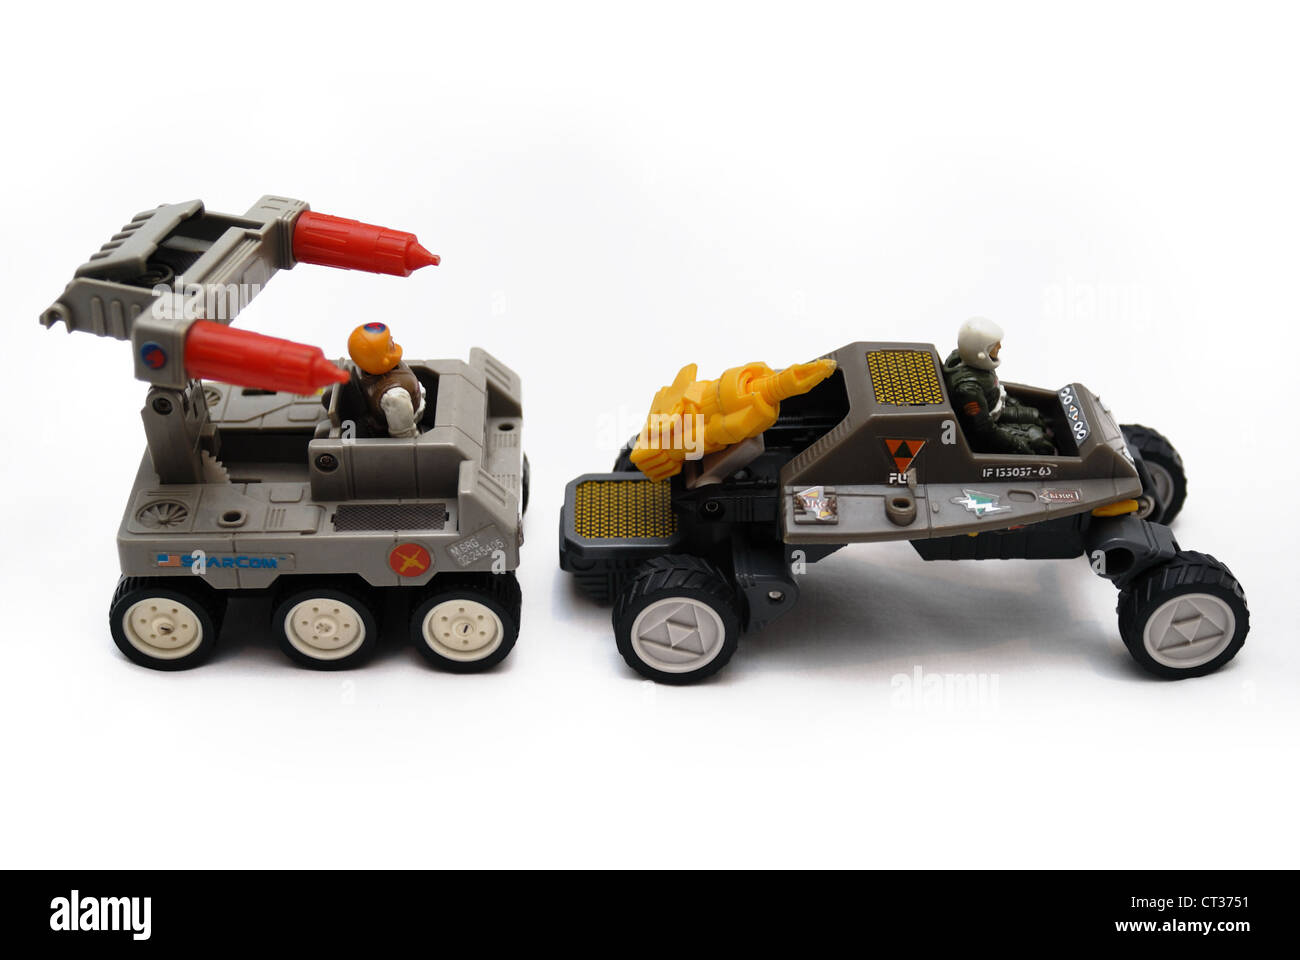 Due Starcom spazio vintage toys, veicoli terrestri con le pistole, le ruote e i driver. Foto Stock